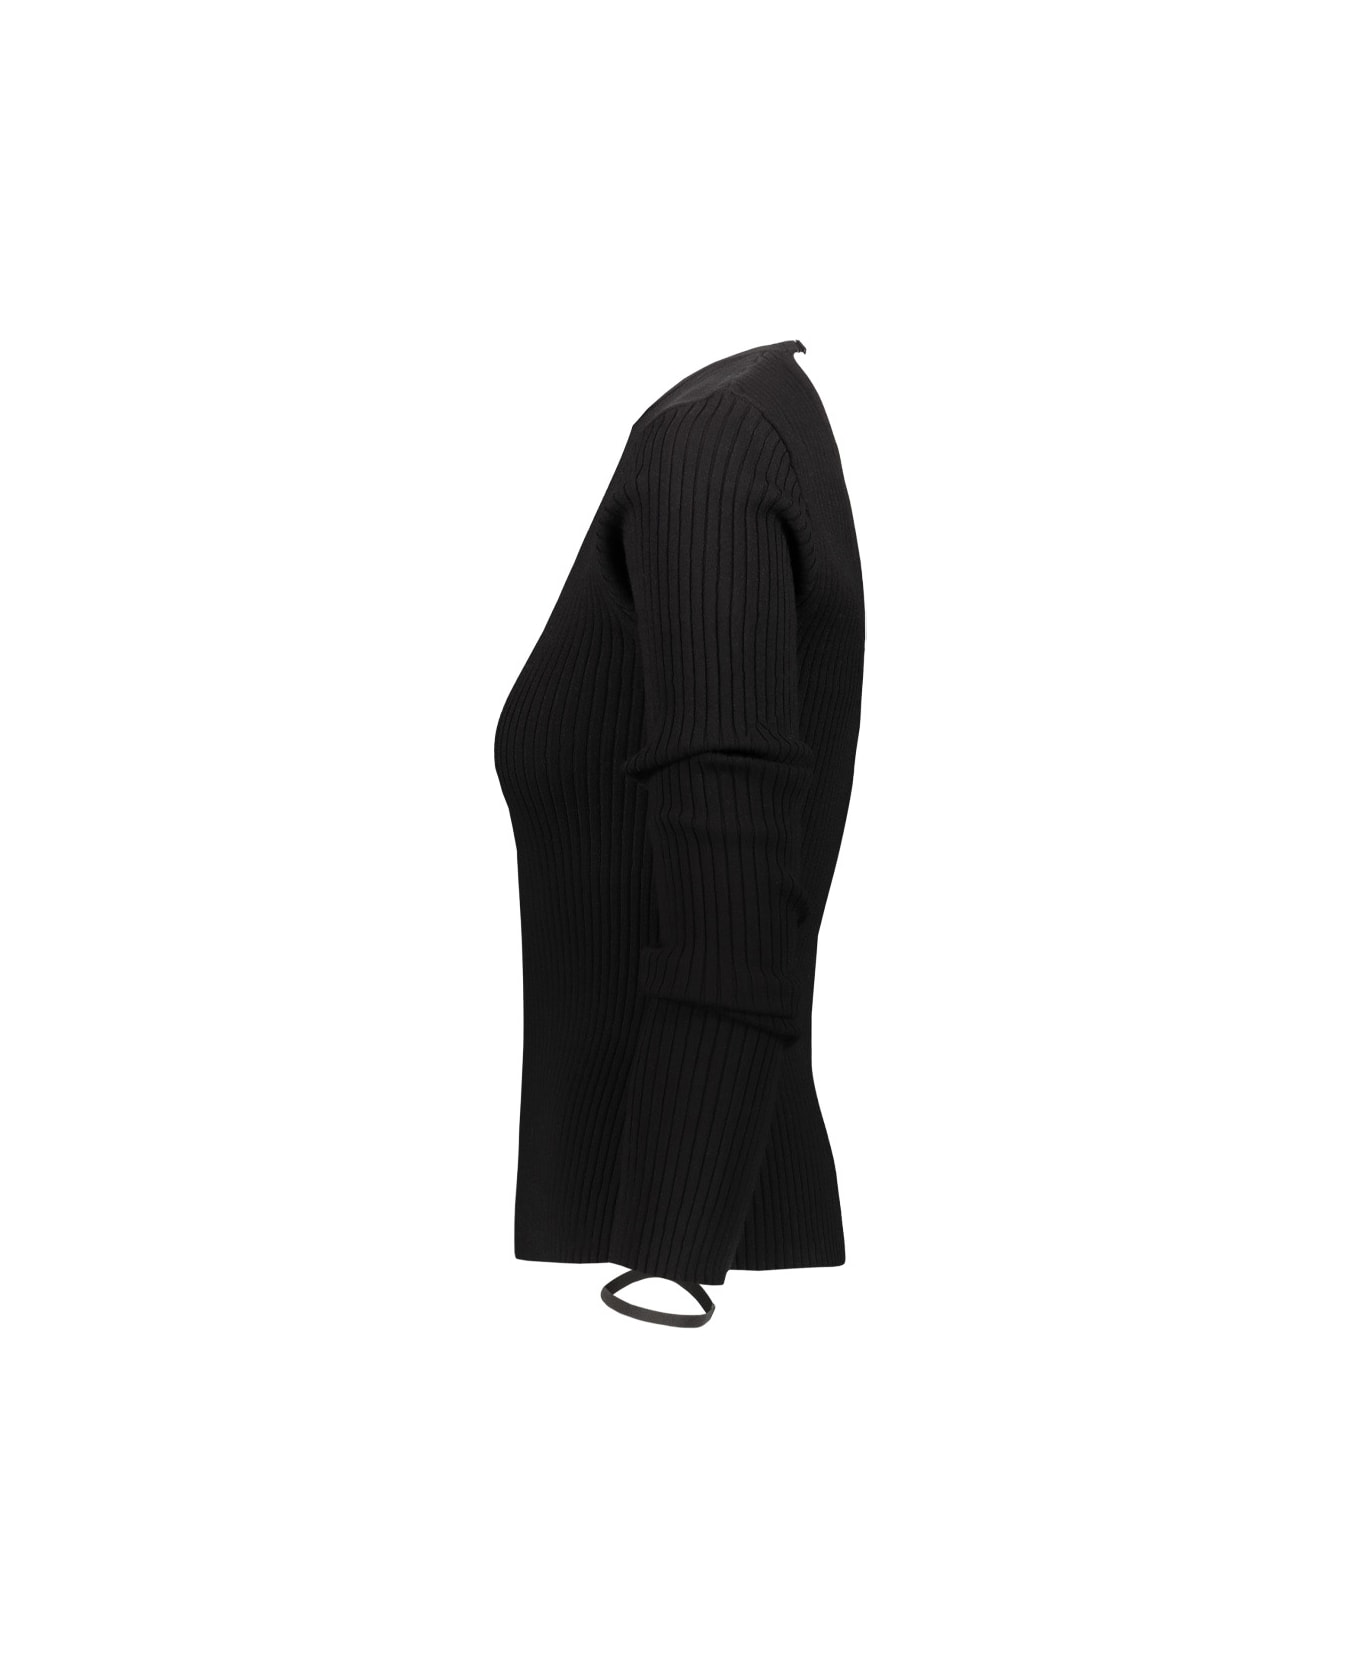 Courrèges Elastic Wrist Rib Knit Sweater - Black